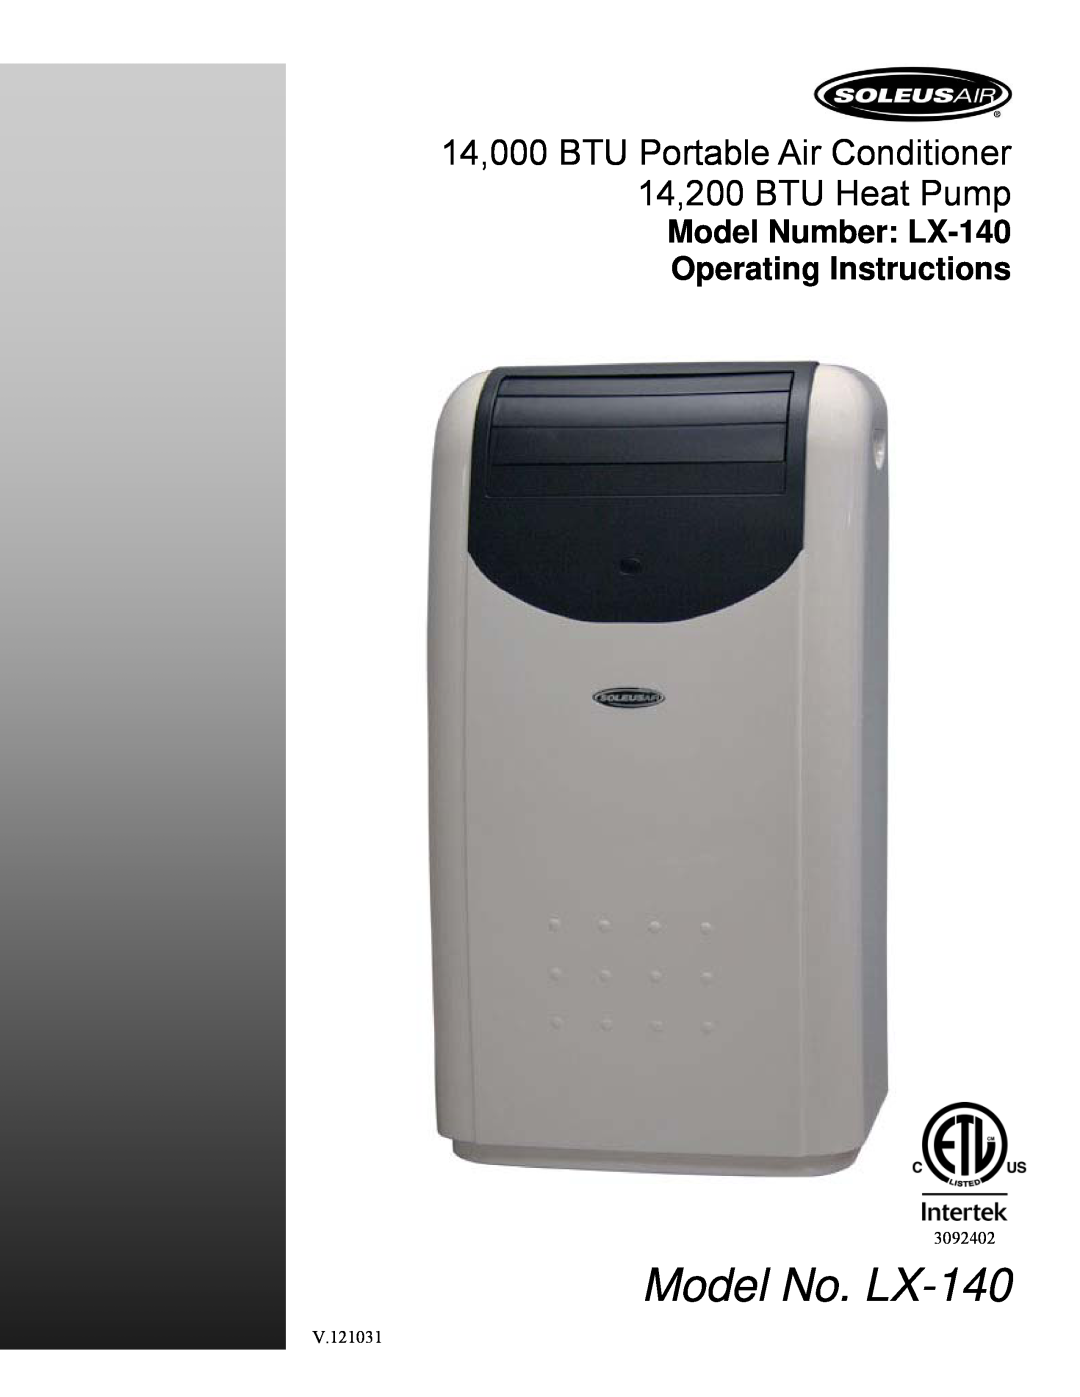 Soleus Air manual Model No. LX-140, 14,000 BTU Portable Air Conditioner, 12,000 BTU Heat Pump, Operating Instructions 